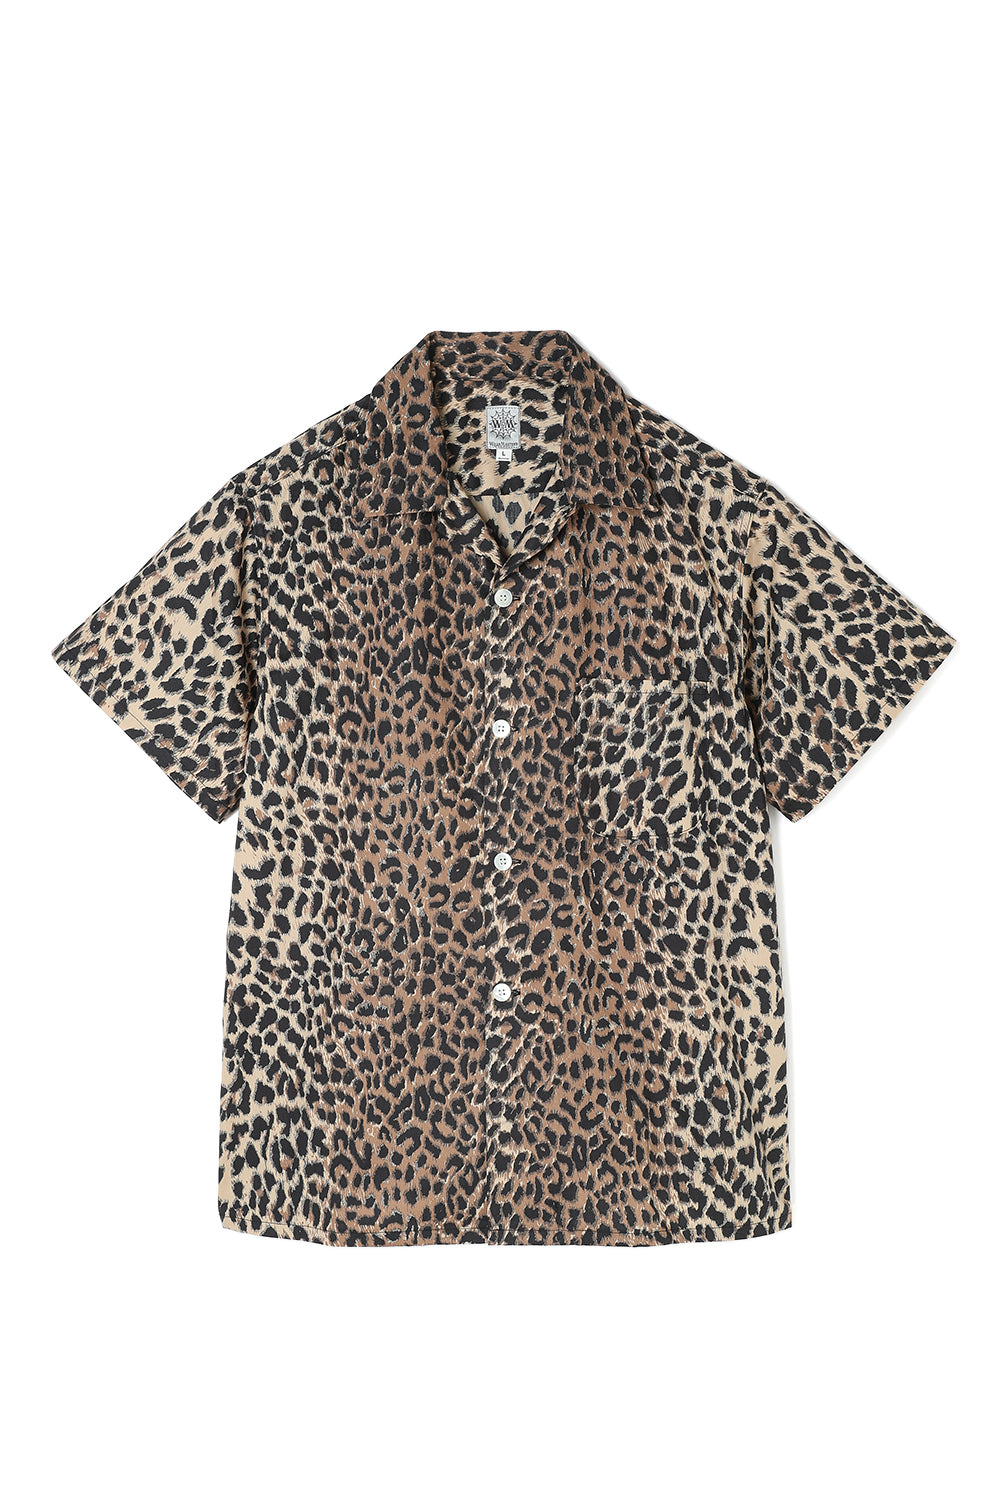 Lot.824 Leopard Cotton S/S Shirt